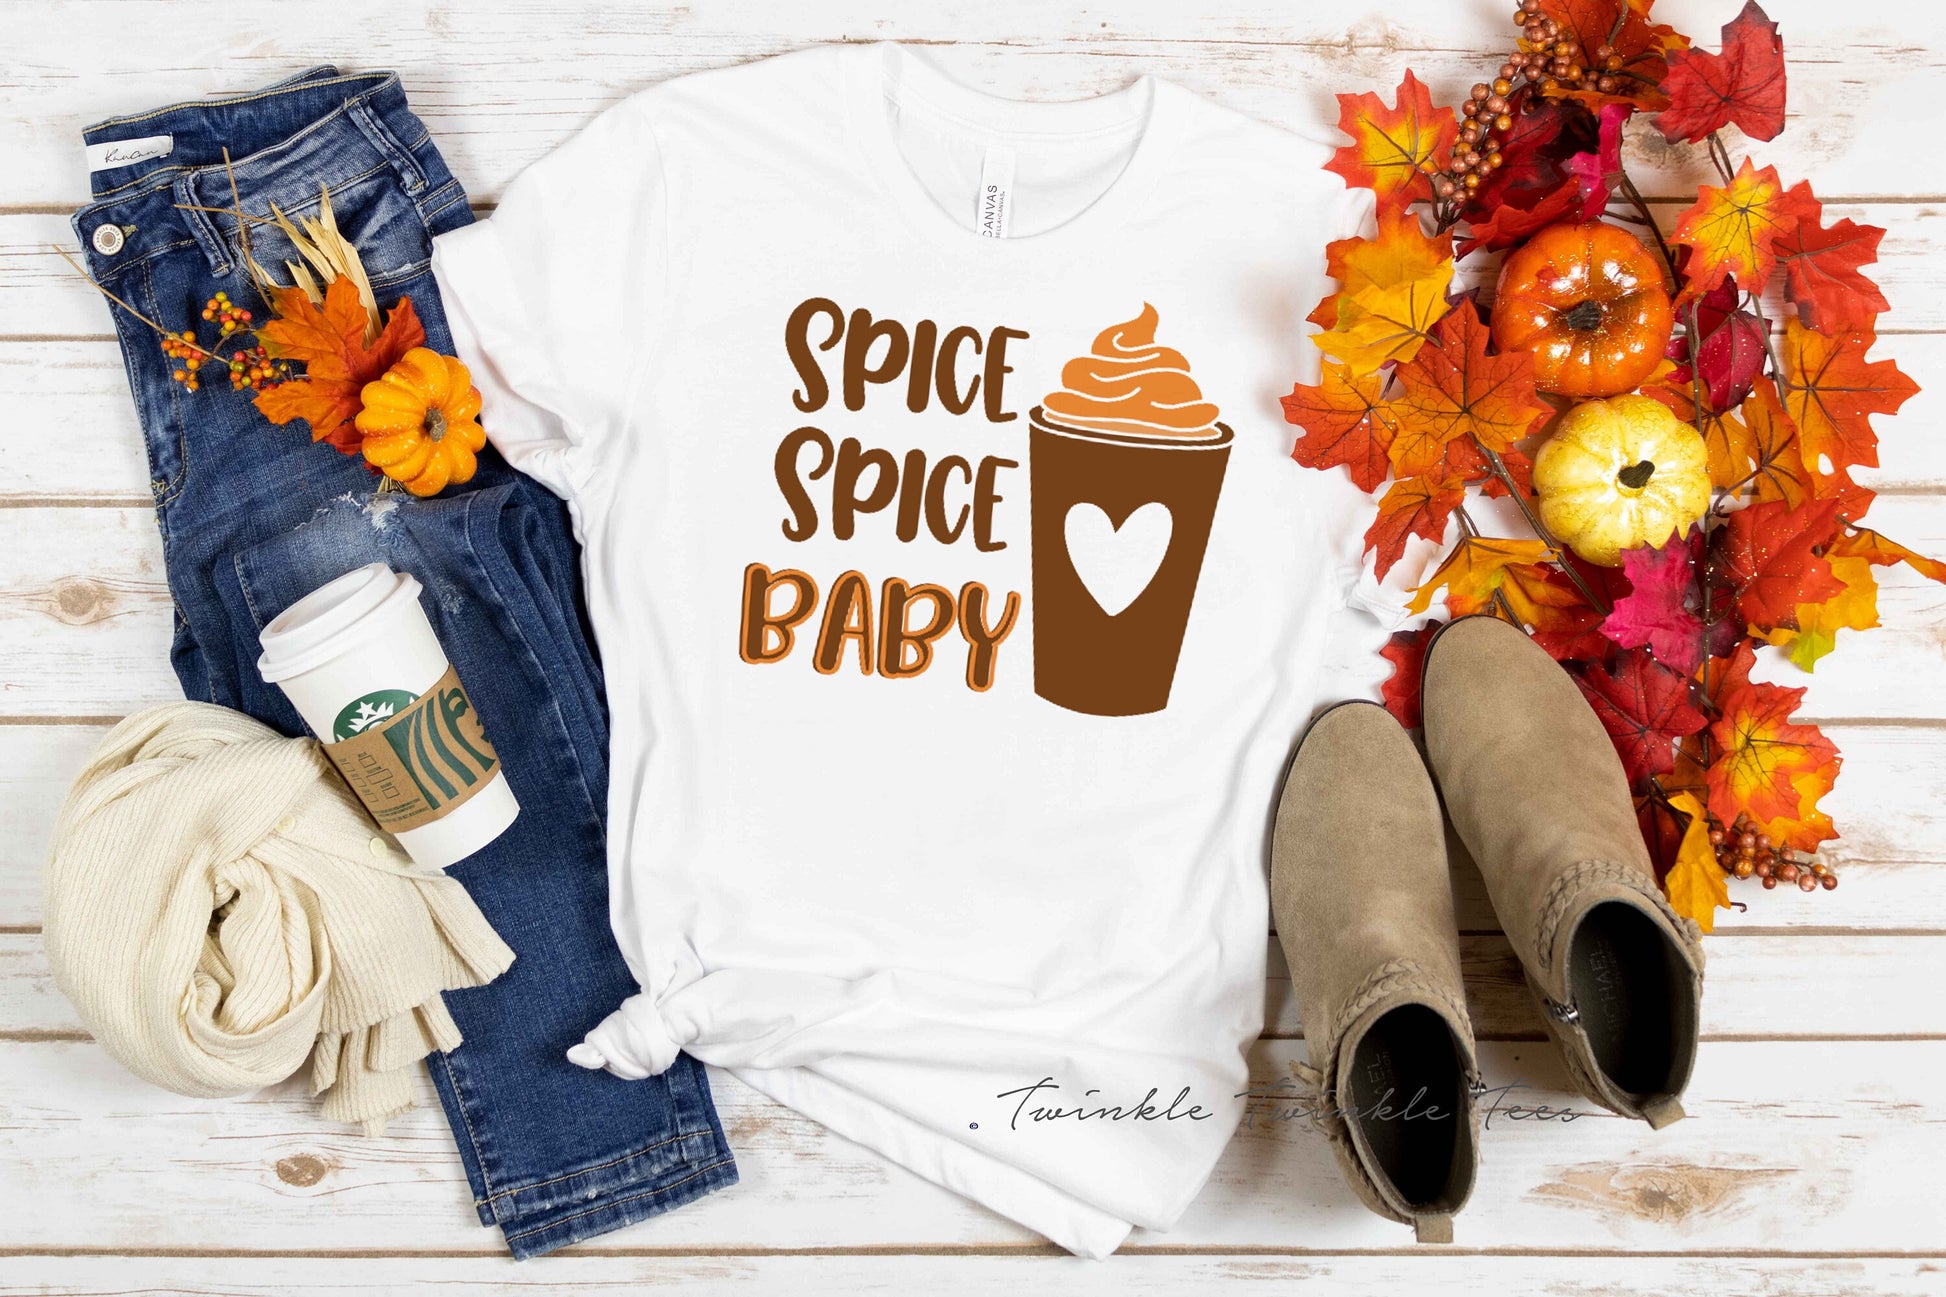 Spice Spice Baby unisex t-shirt -  Pumpkin Spice Shirt - Autumn Shirt - Womens Fall Shirt - Pumpkin Spice Addict